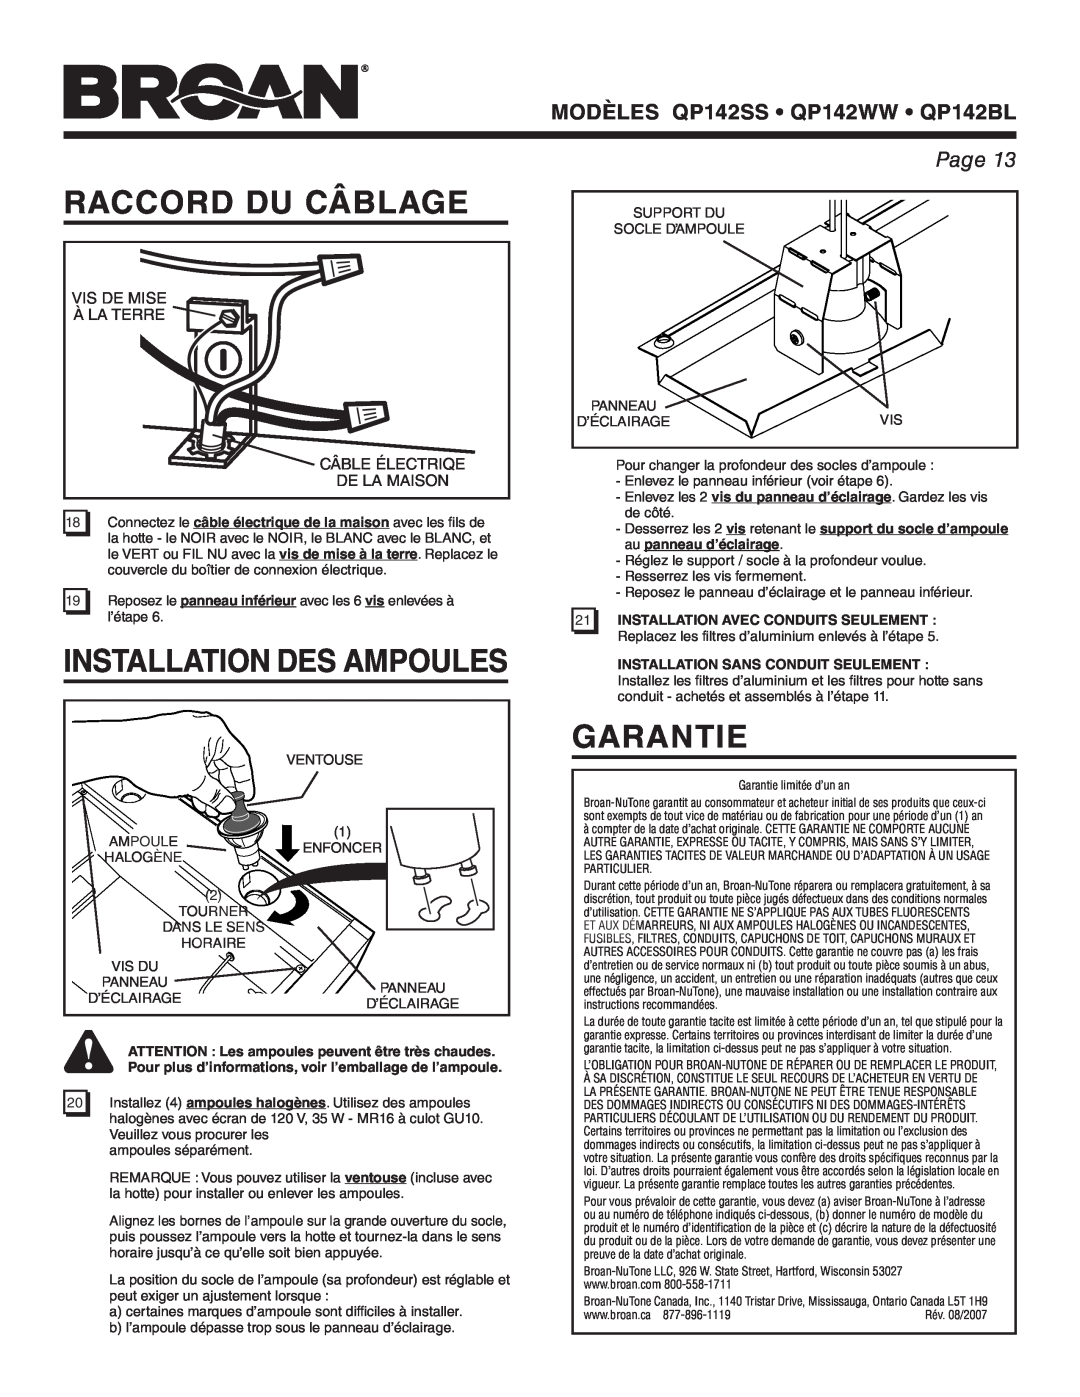 Broan manual Raccord Du Câblage, Installation Des Ampoules, Garantie, MODÈLES QP142SS QP142WW QP142BL, Page 